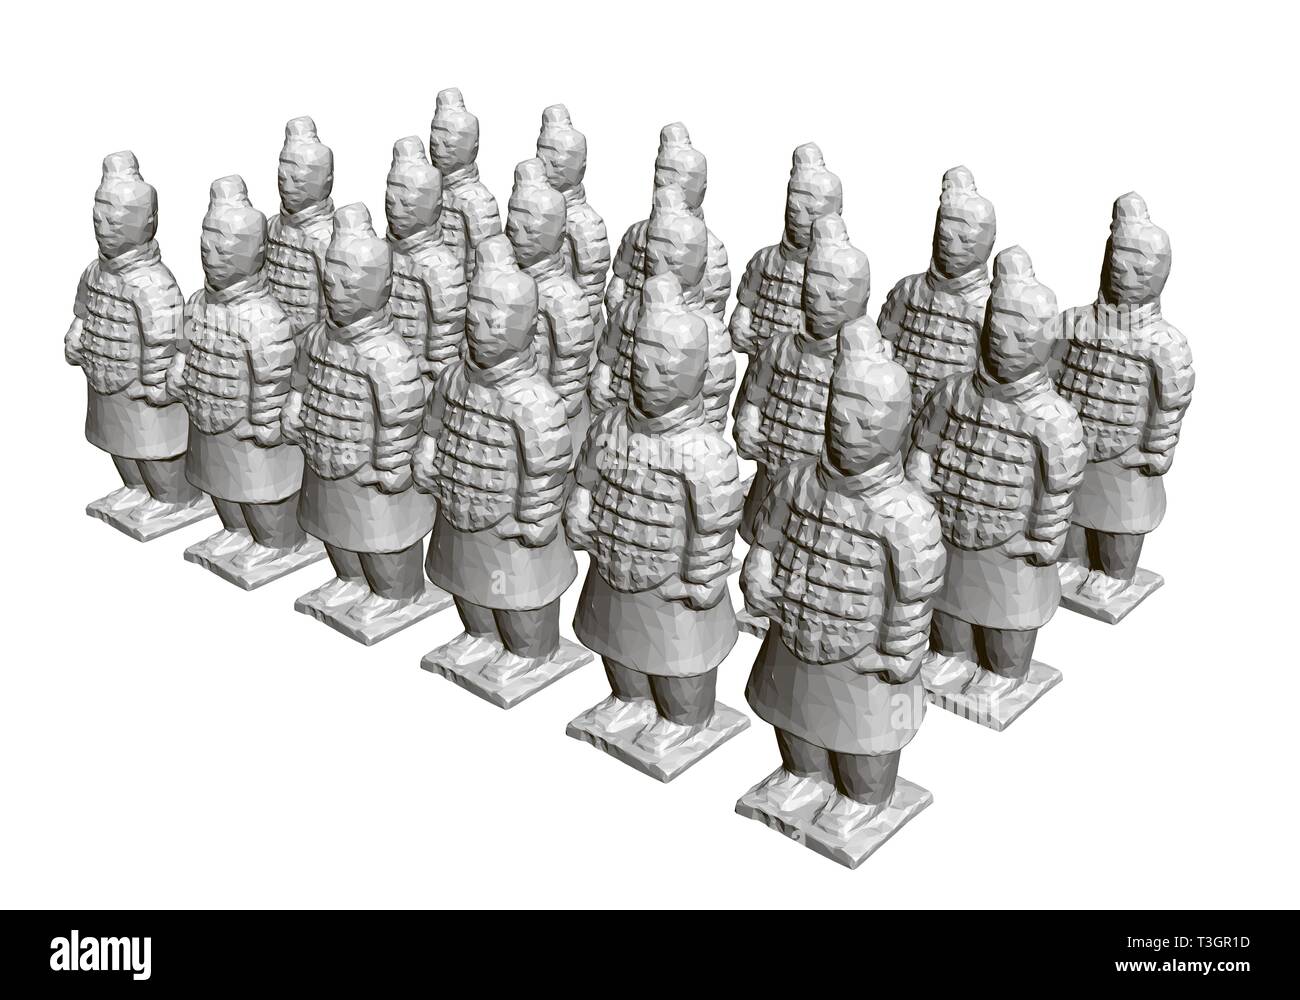 Groupe de guerriers de terre cuite. Sculptures de guerriers en terre cuite ancienne. 3D. Vue isométrique. Vector illustration Illustration de Vecteur